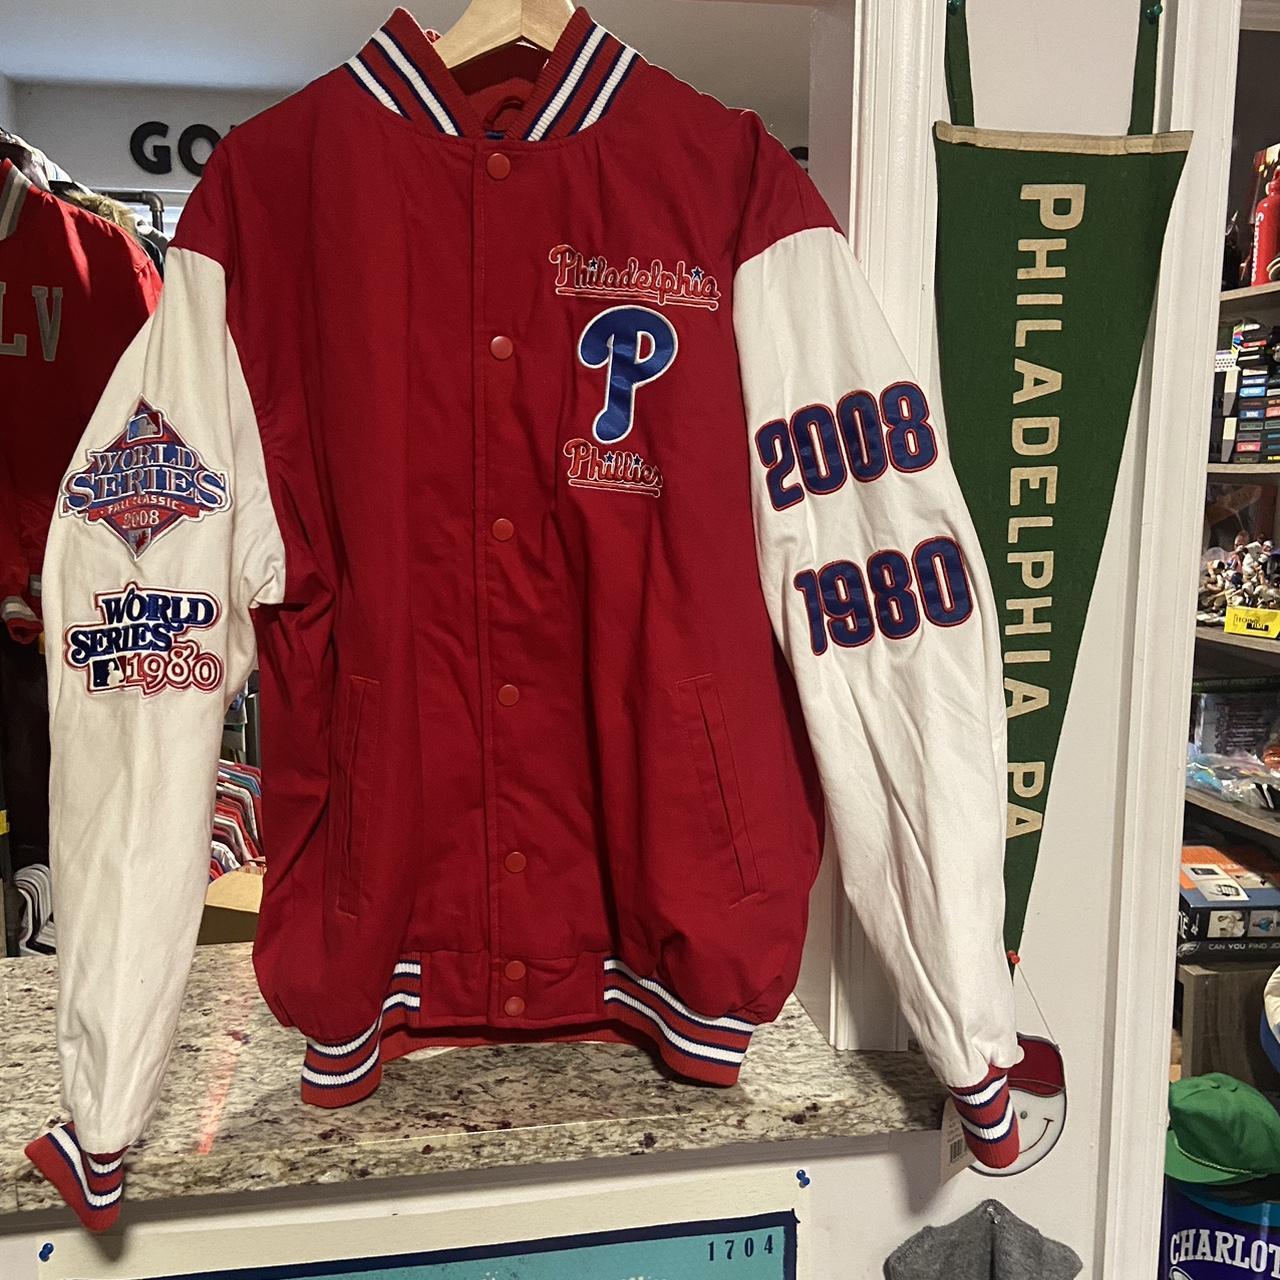 Vintage Philadelphia Phillies 1980's Baseball Jacket